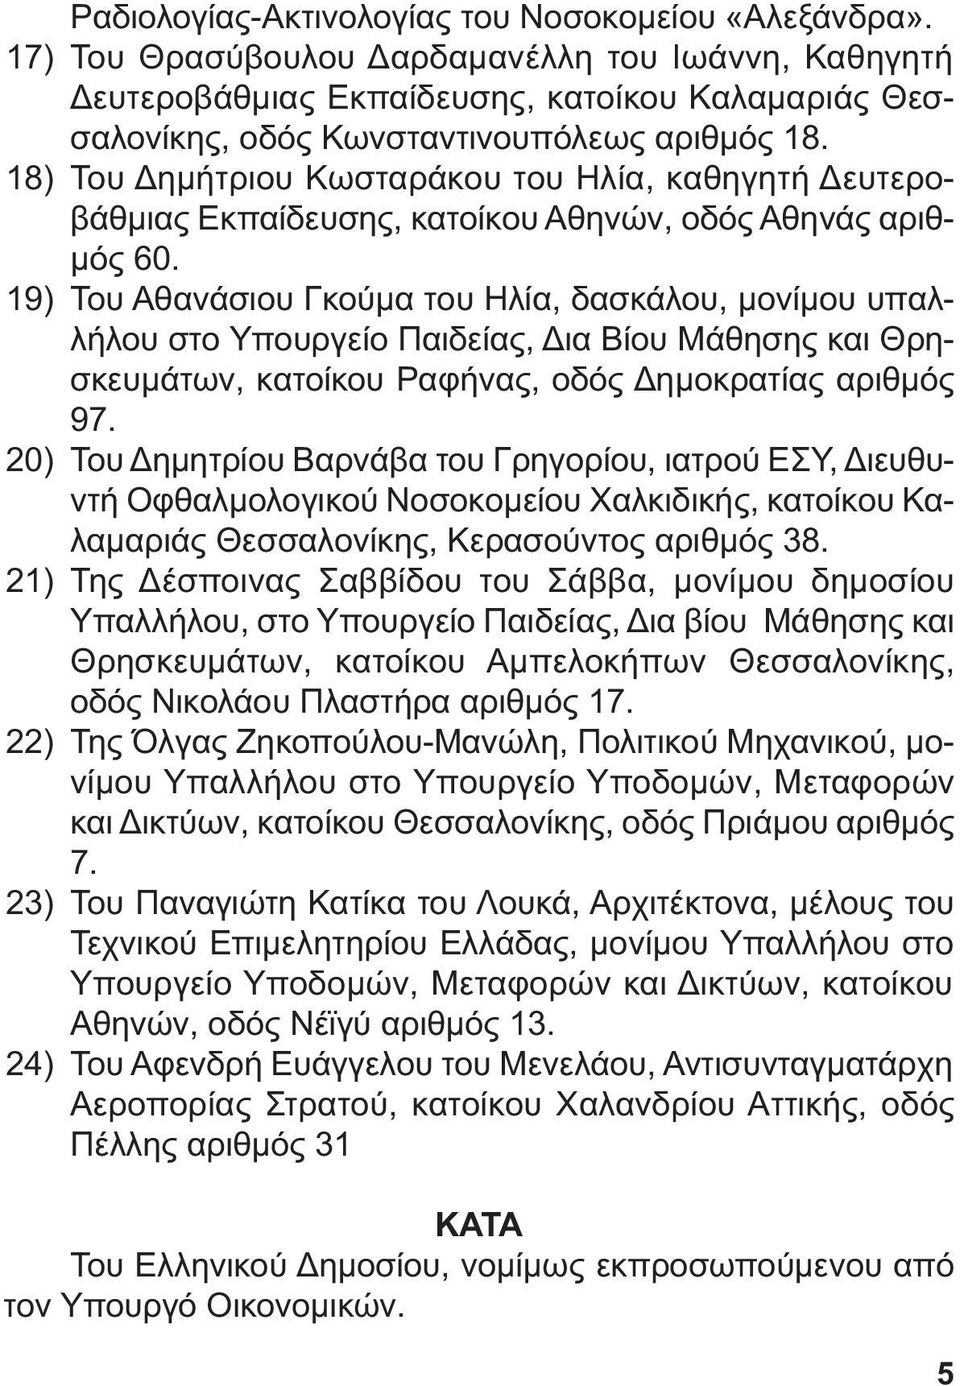 18) Του ηµήτριου Κωσταράκου του Ηλία, καθηγητή ευτεροβάθµιας Εκπαίδευσης, κατοίκου Αθηνών, οδός Αθηνάς αριθ- µός 60.